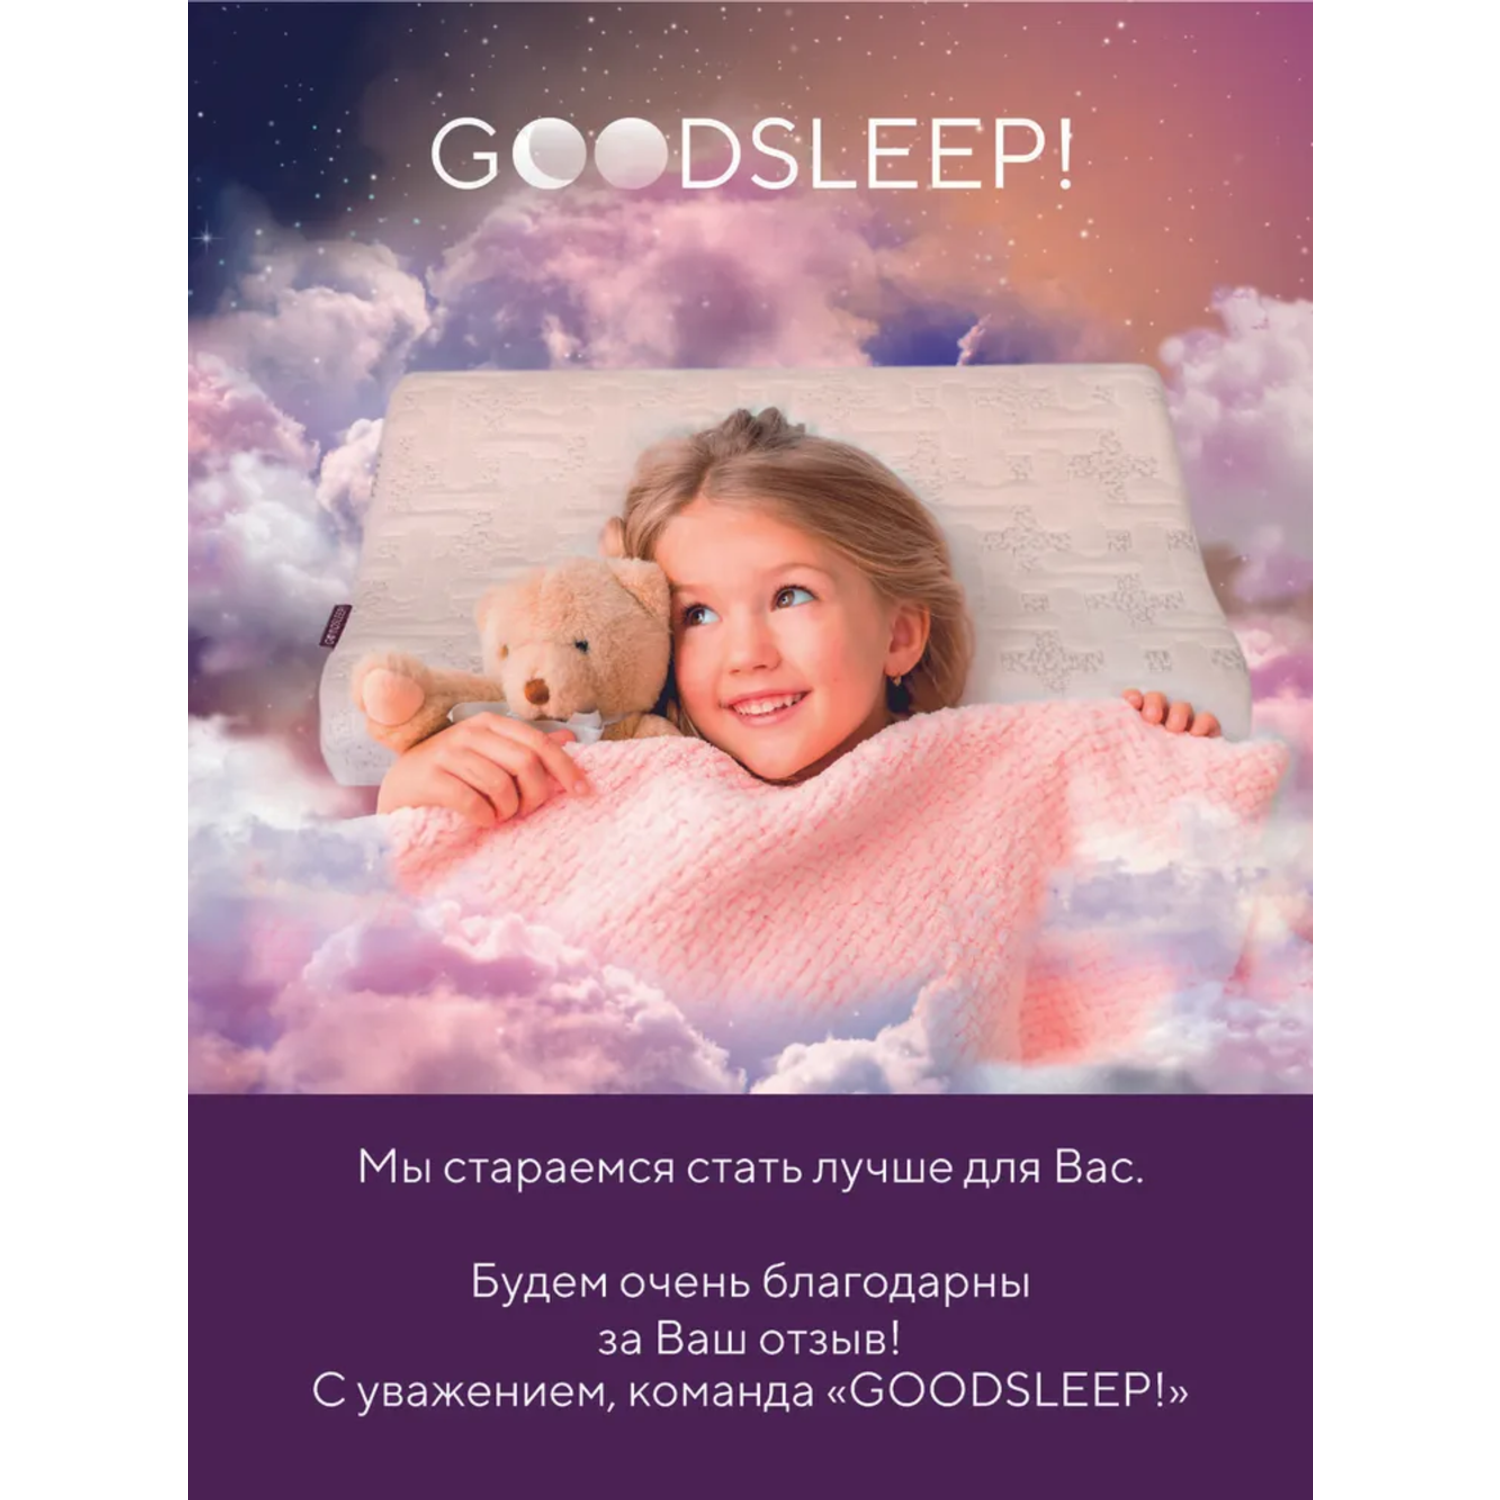 Ортопедическая подушка Goodsleep! для детей от 3-х лет - фото 8